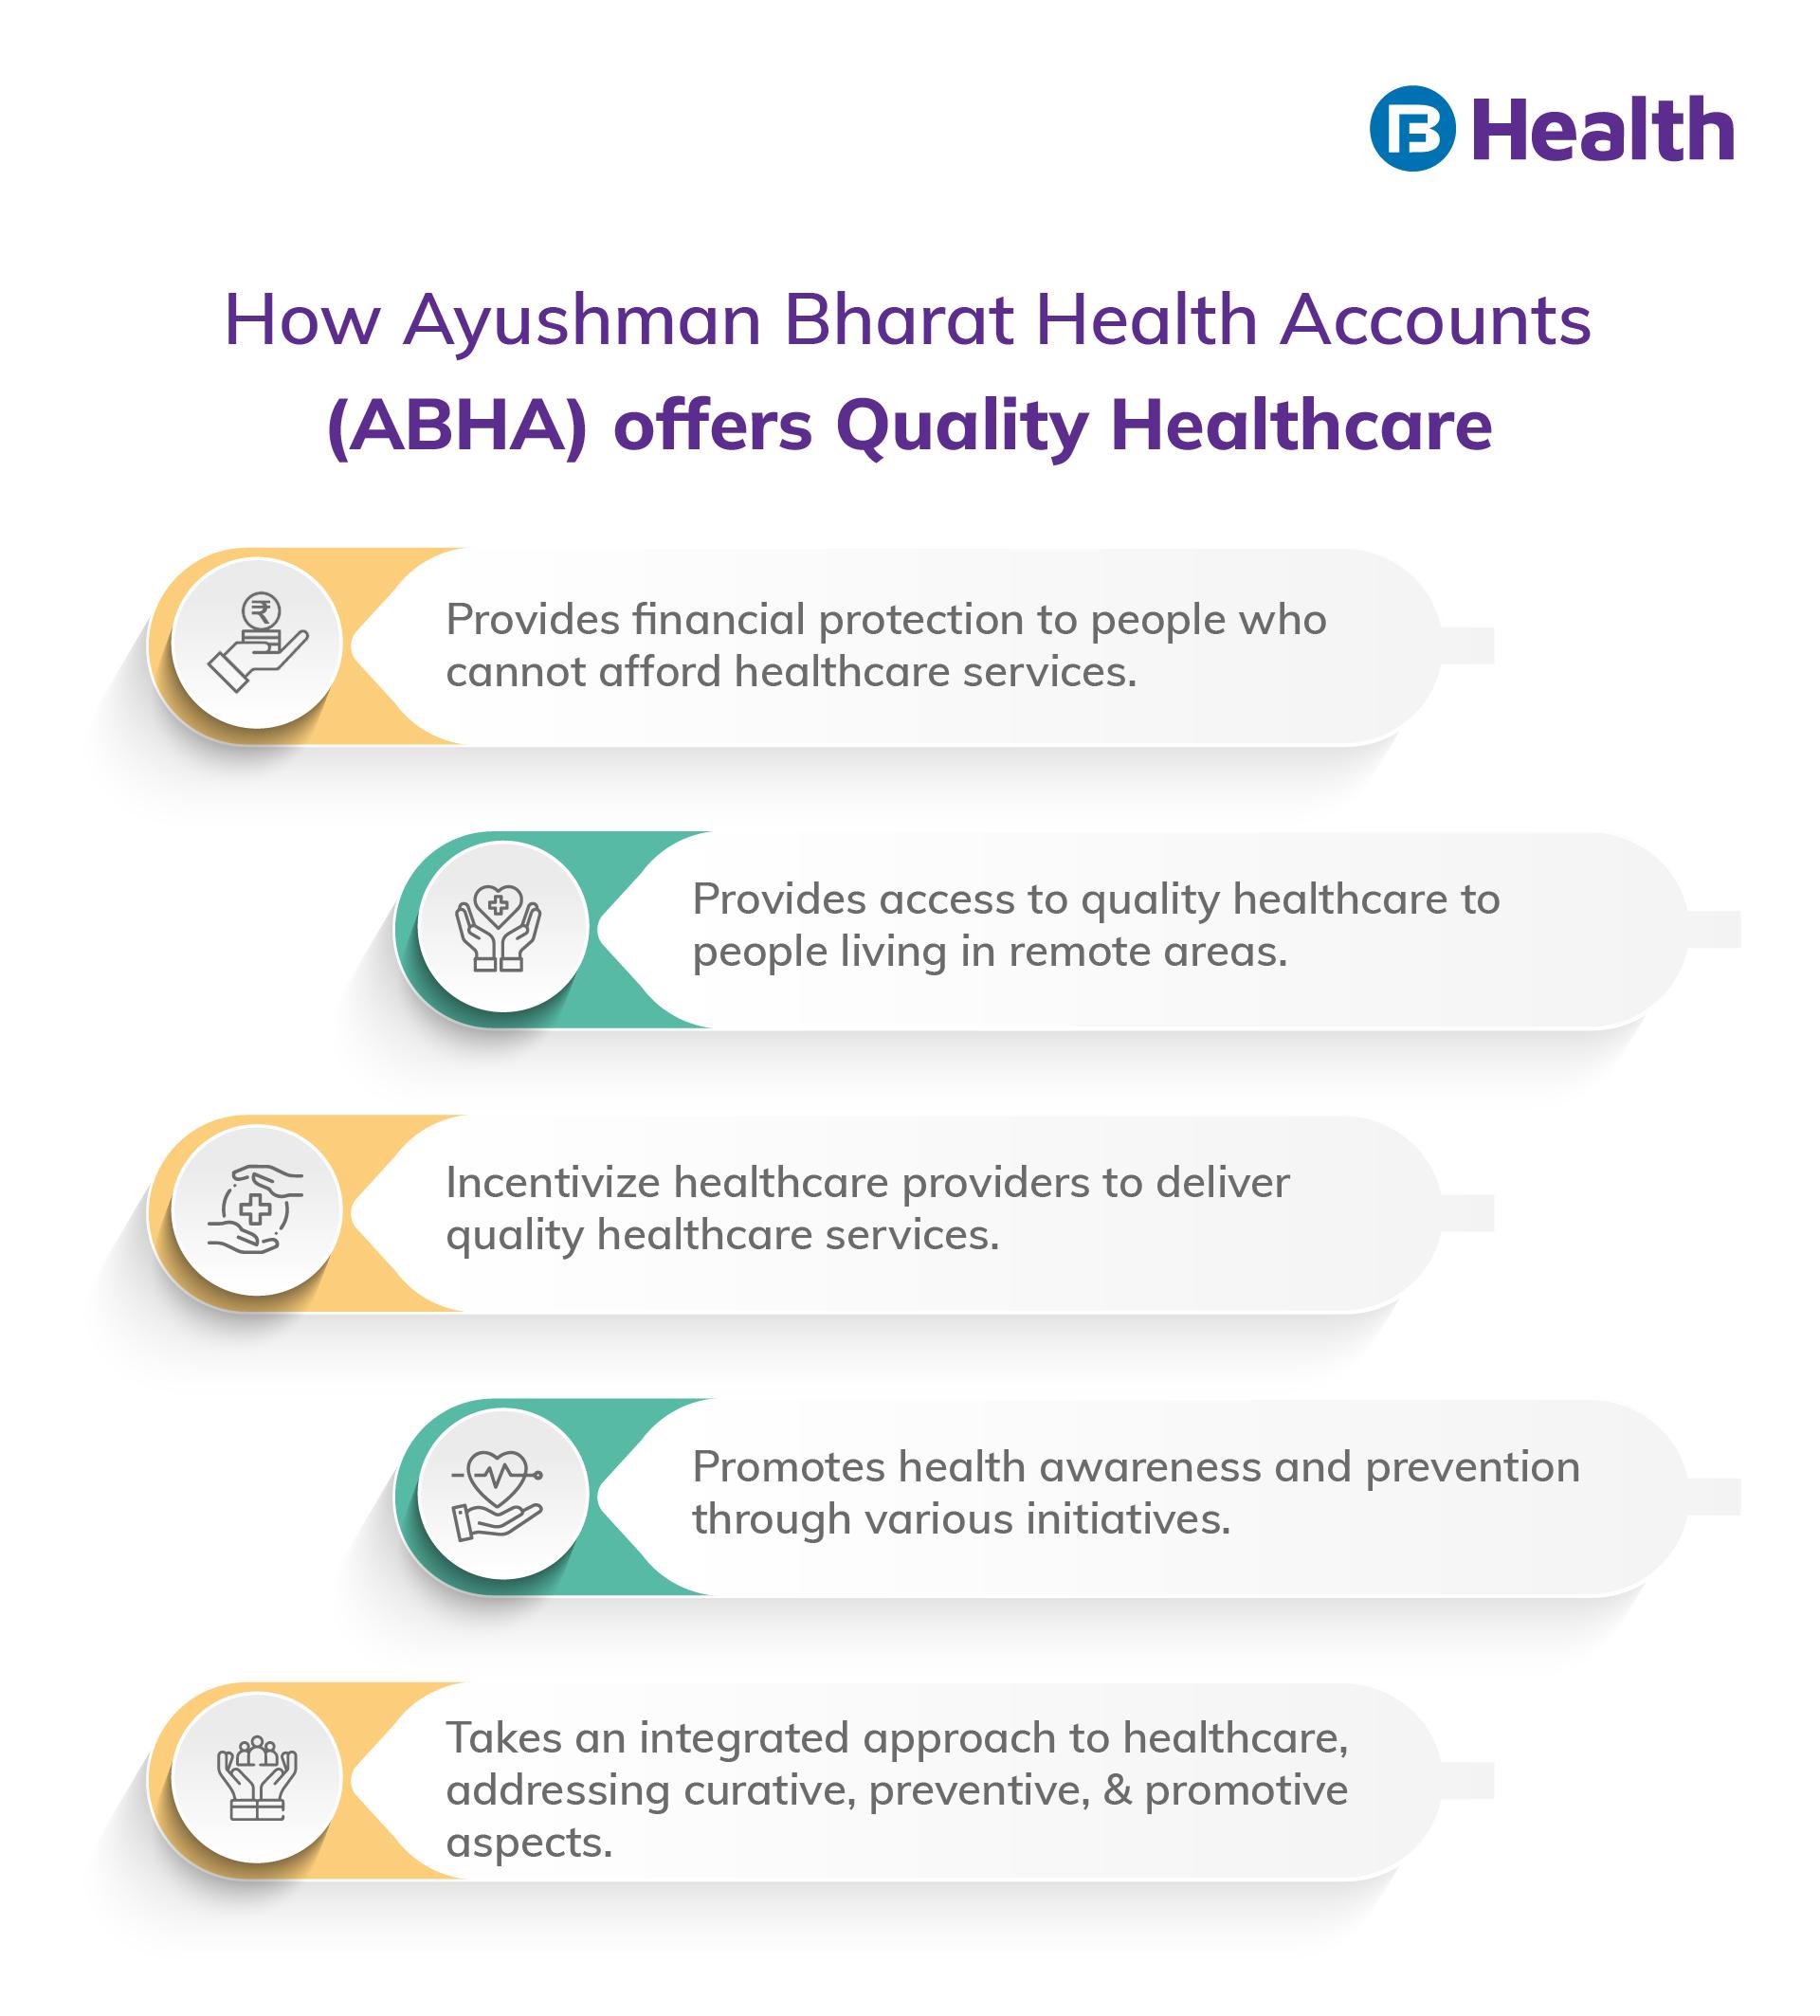 ABHA: Ayushman Bharat Health Accounts